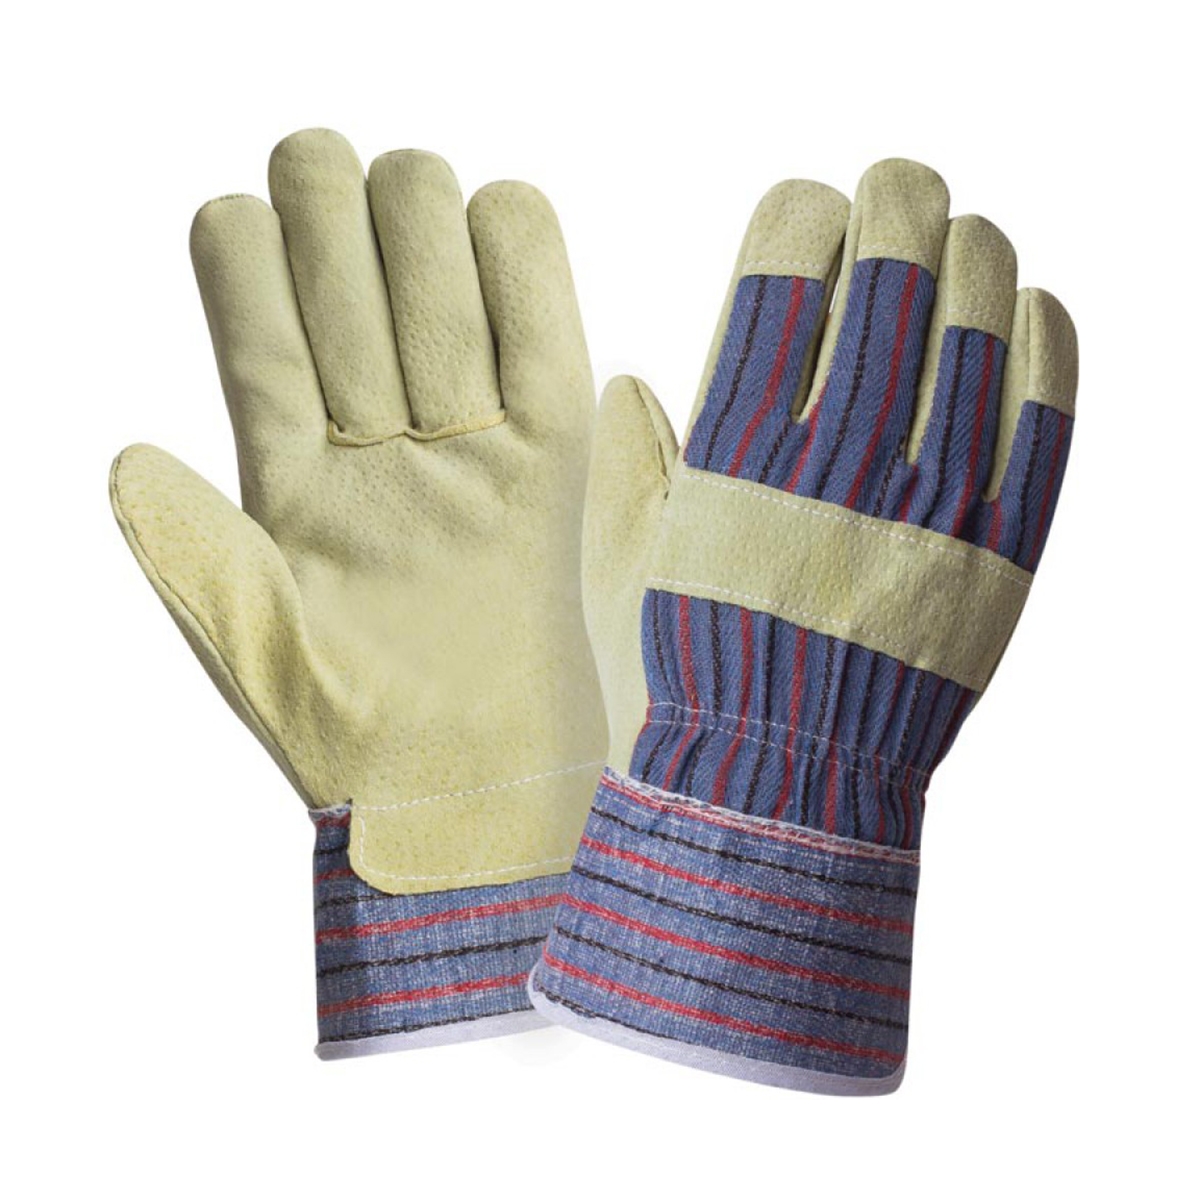 Перчатки спилковые комбинированные ПТК ЛЕОН 25761, размер 9, 1 пара комбинированные перчатки союзспецодежда